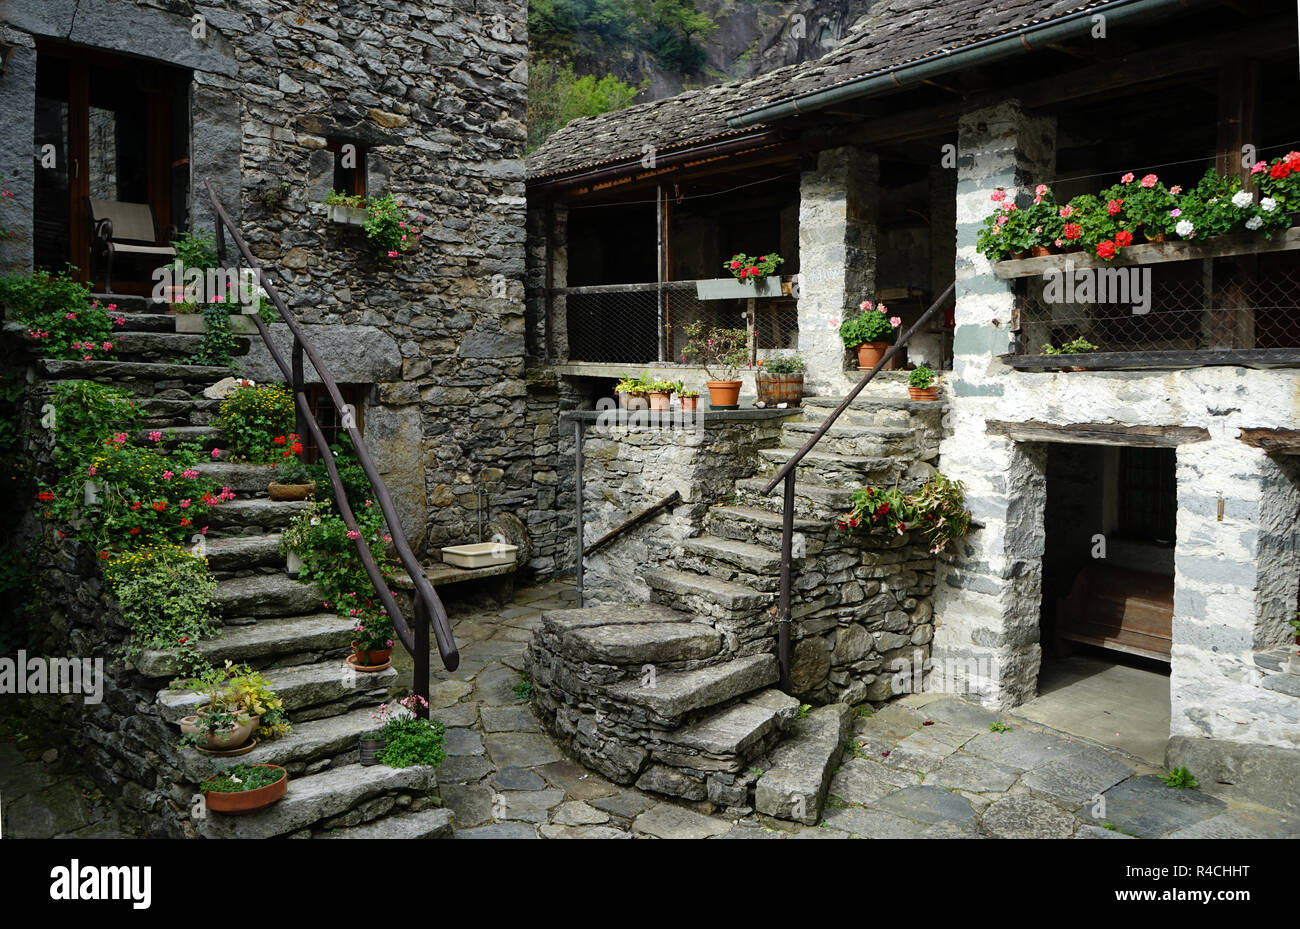 Escaleras de roca y tradicionales casas de piedra en townsquare en pueblo viejo Sonlerto, Val Bavona, Tcicino, Suiza Foto de stock